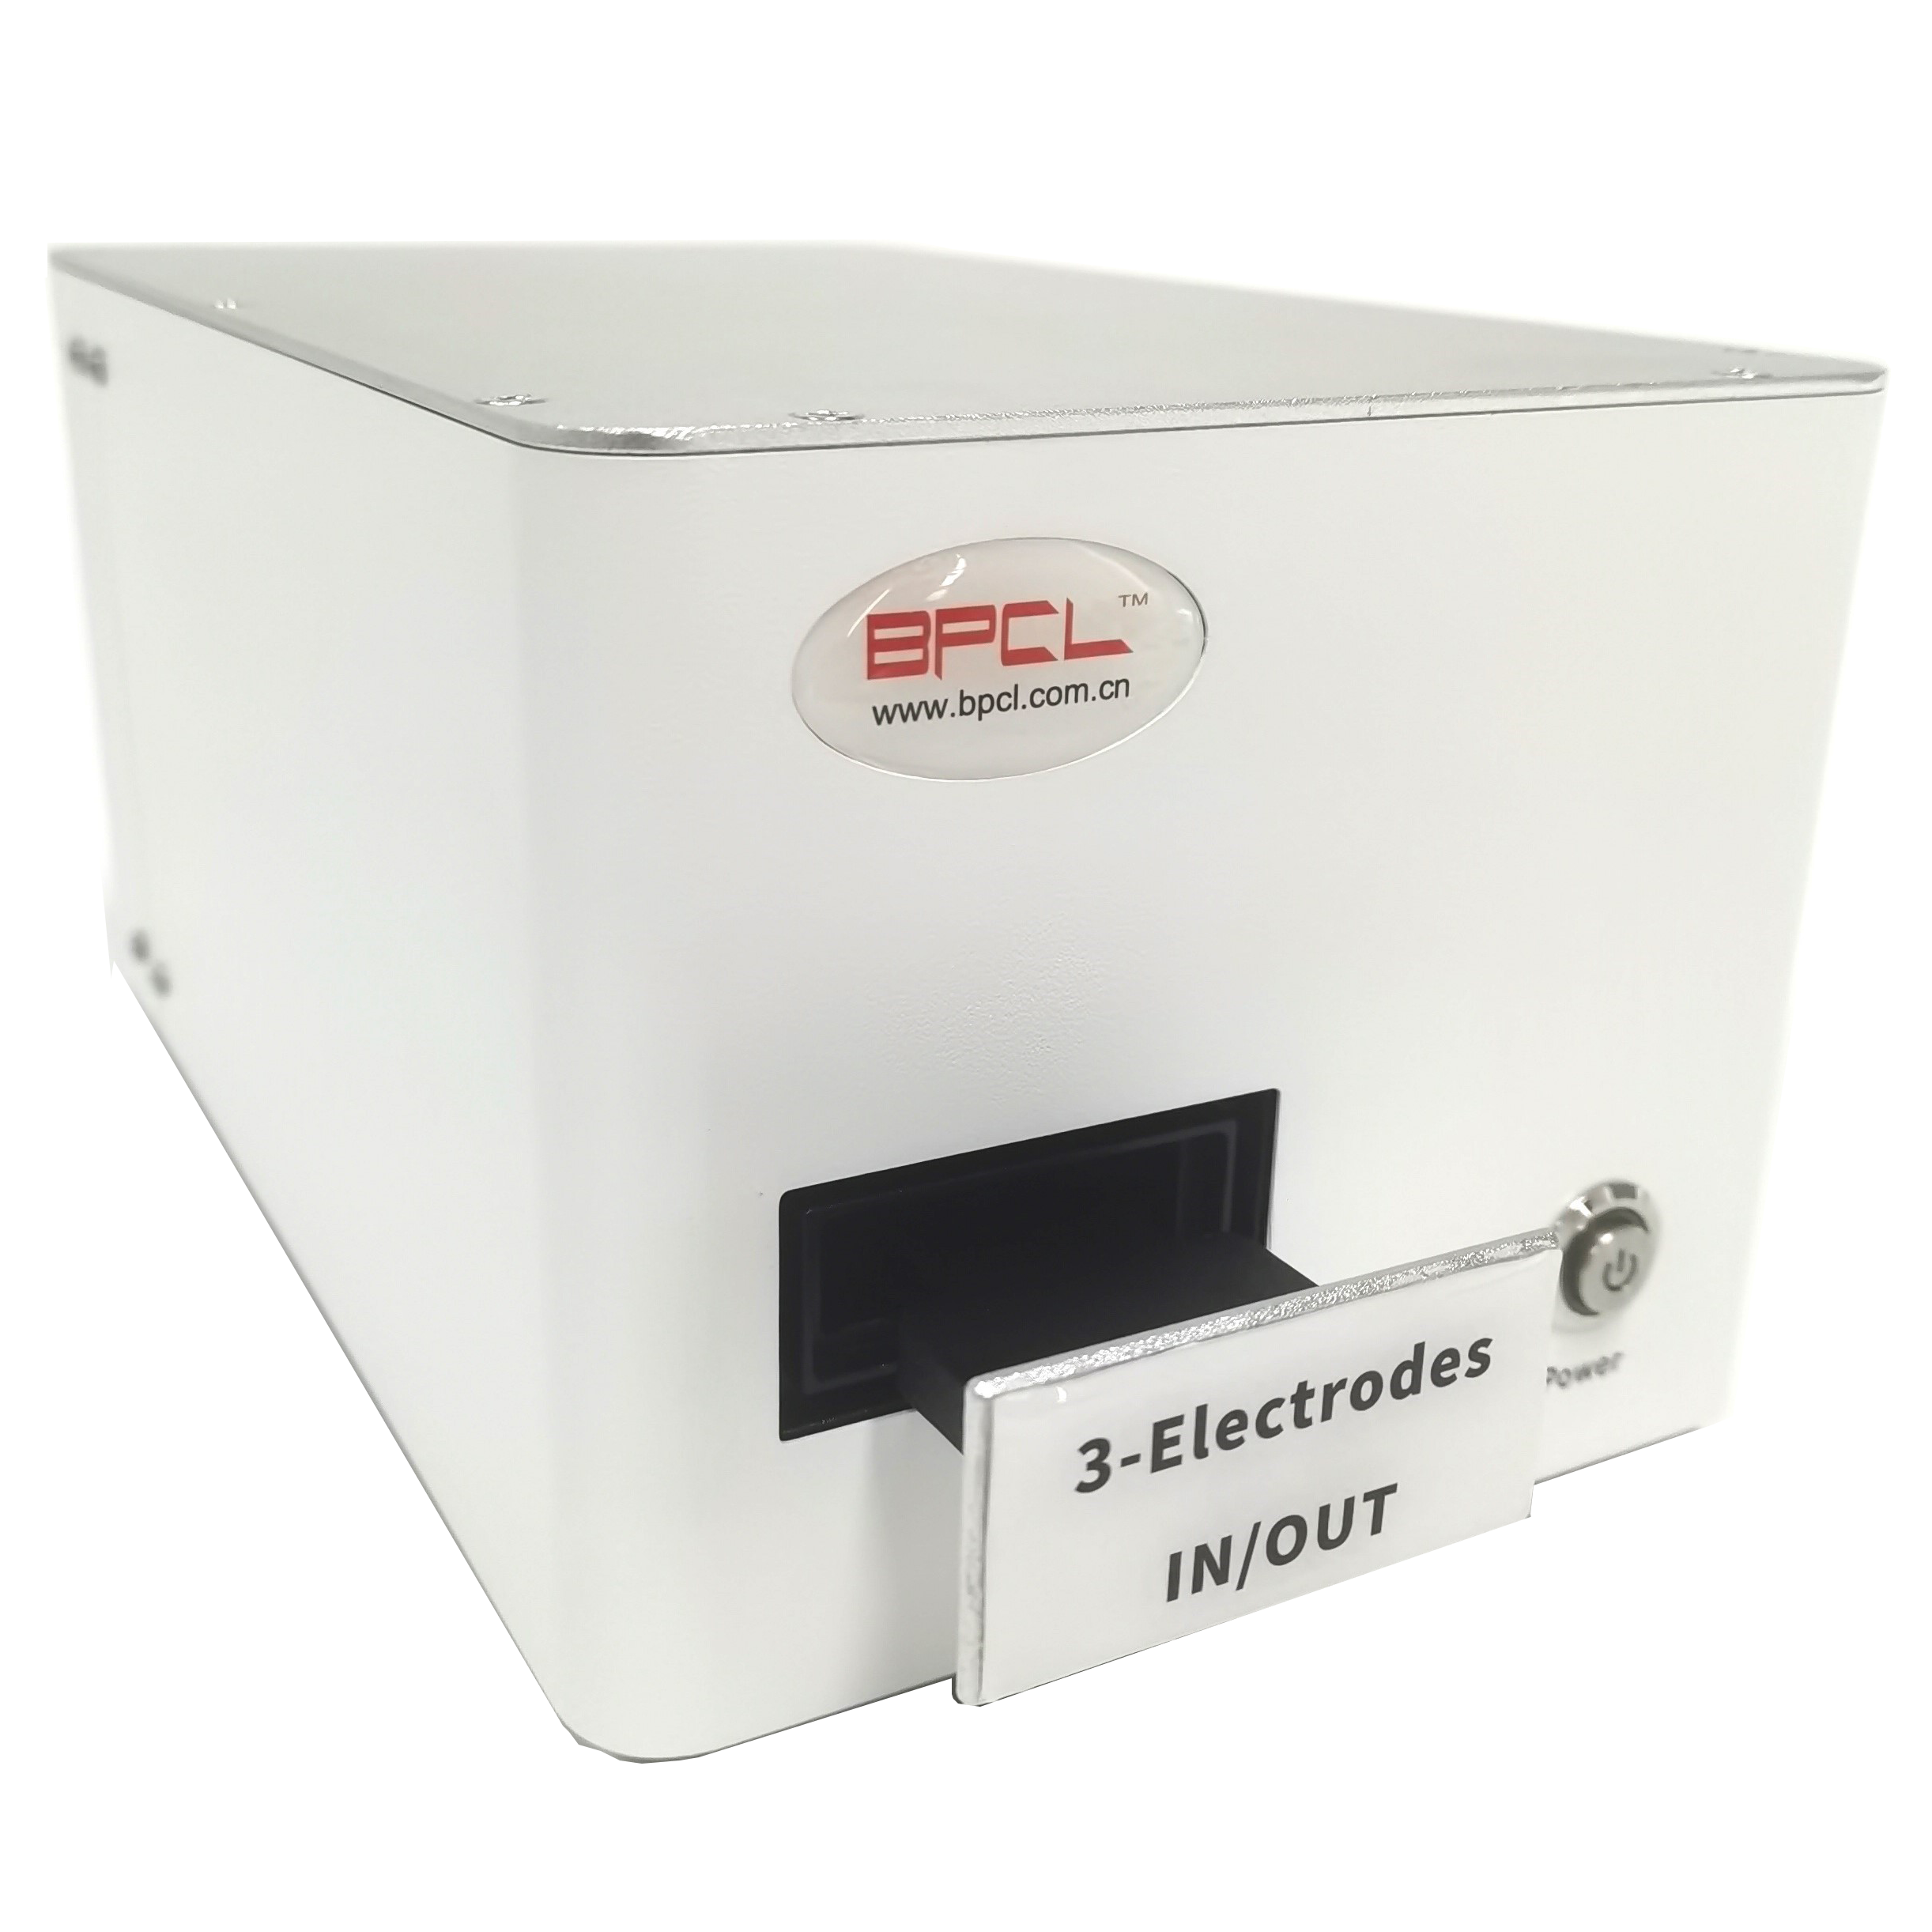 BPCL-SECL30 电化学发光分析仪（电致发光检测仪）-便携式三联丝印电极